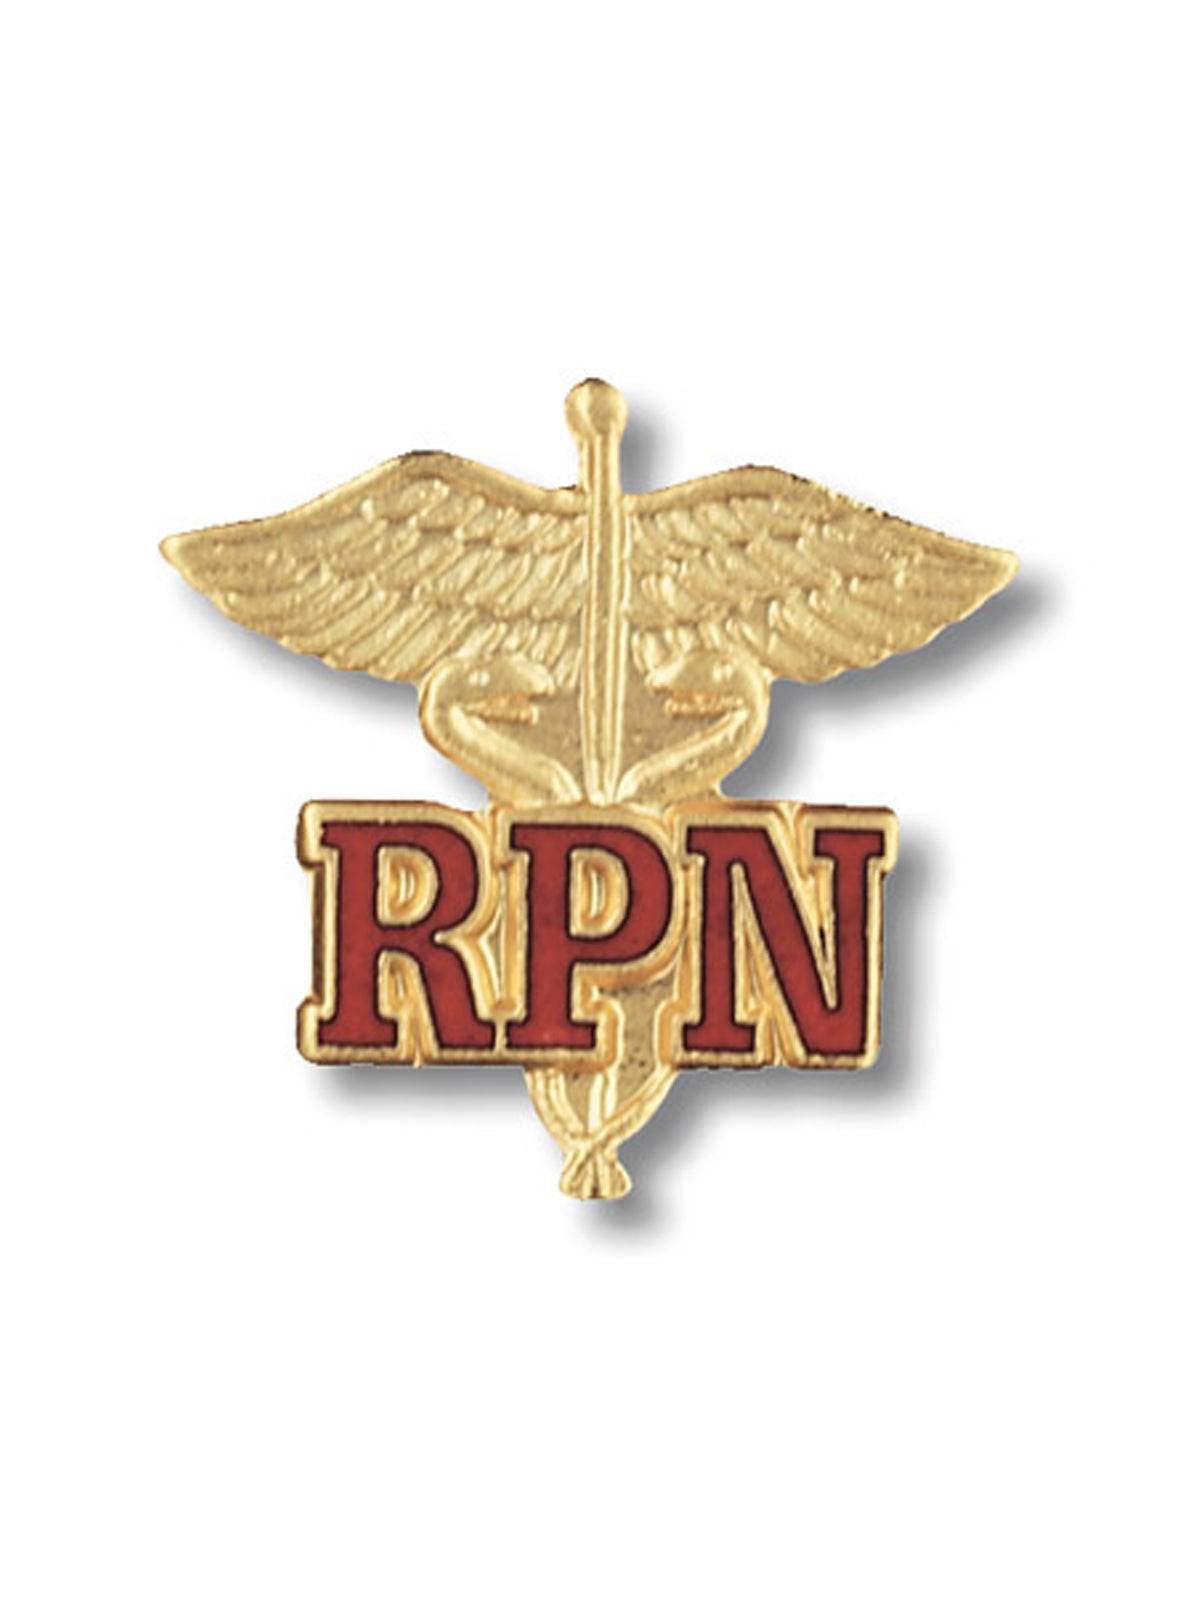 Registered Practical Nurse Cloisonne Pin - 2023 - Standard